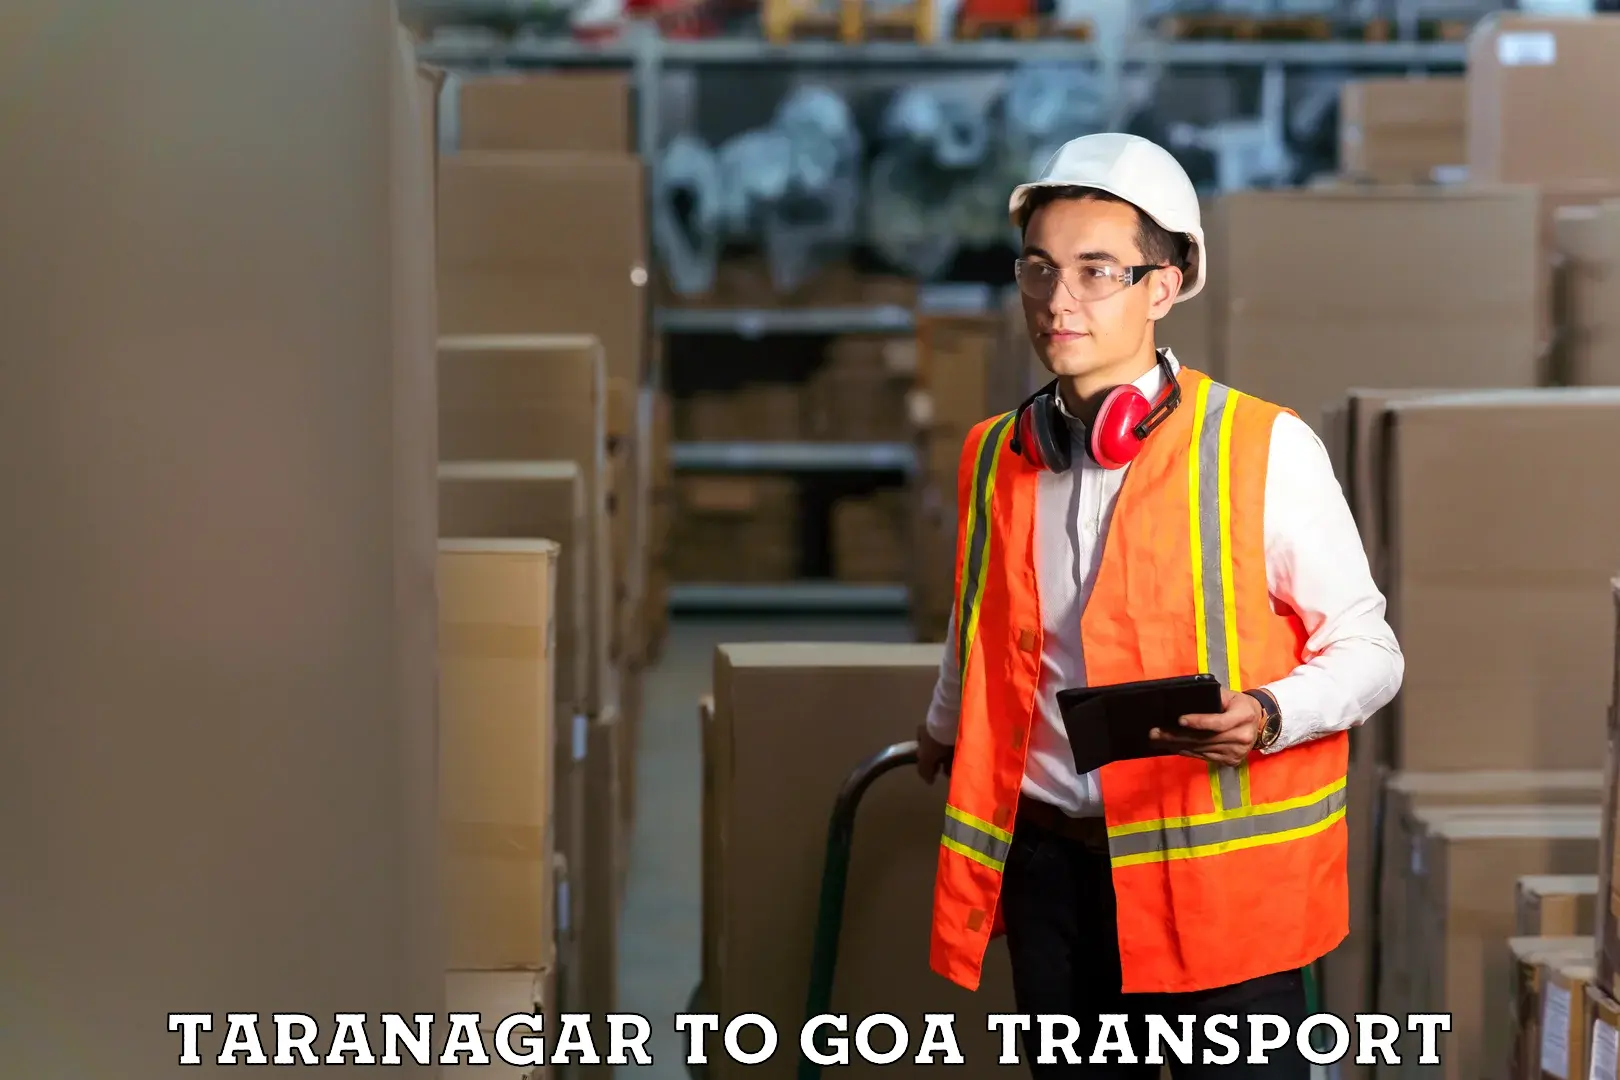 Express transport services Taranagar to Ponda